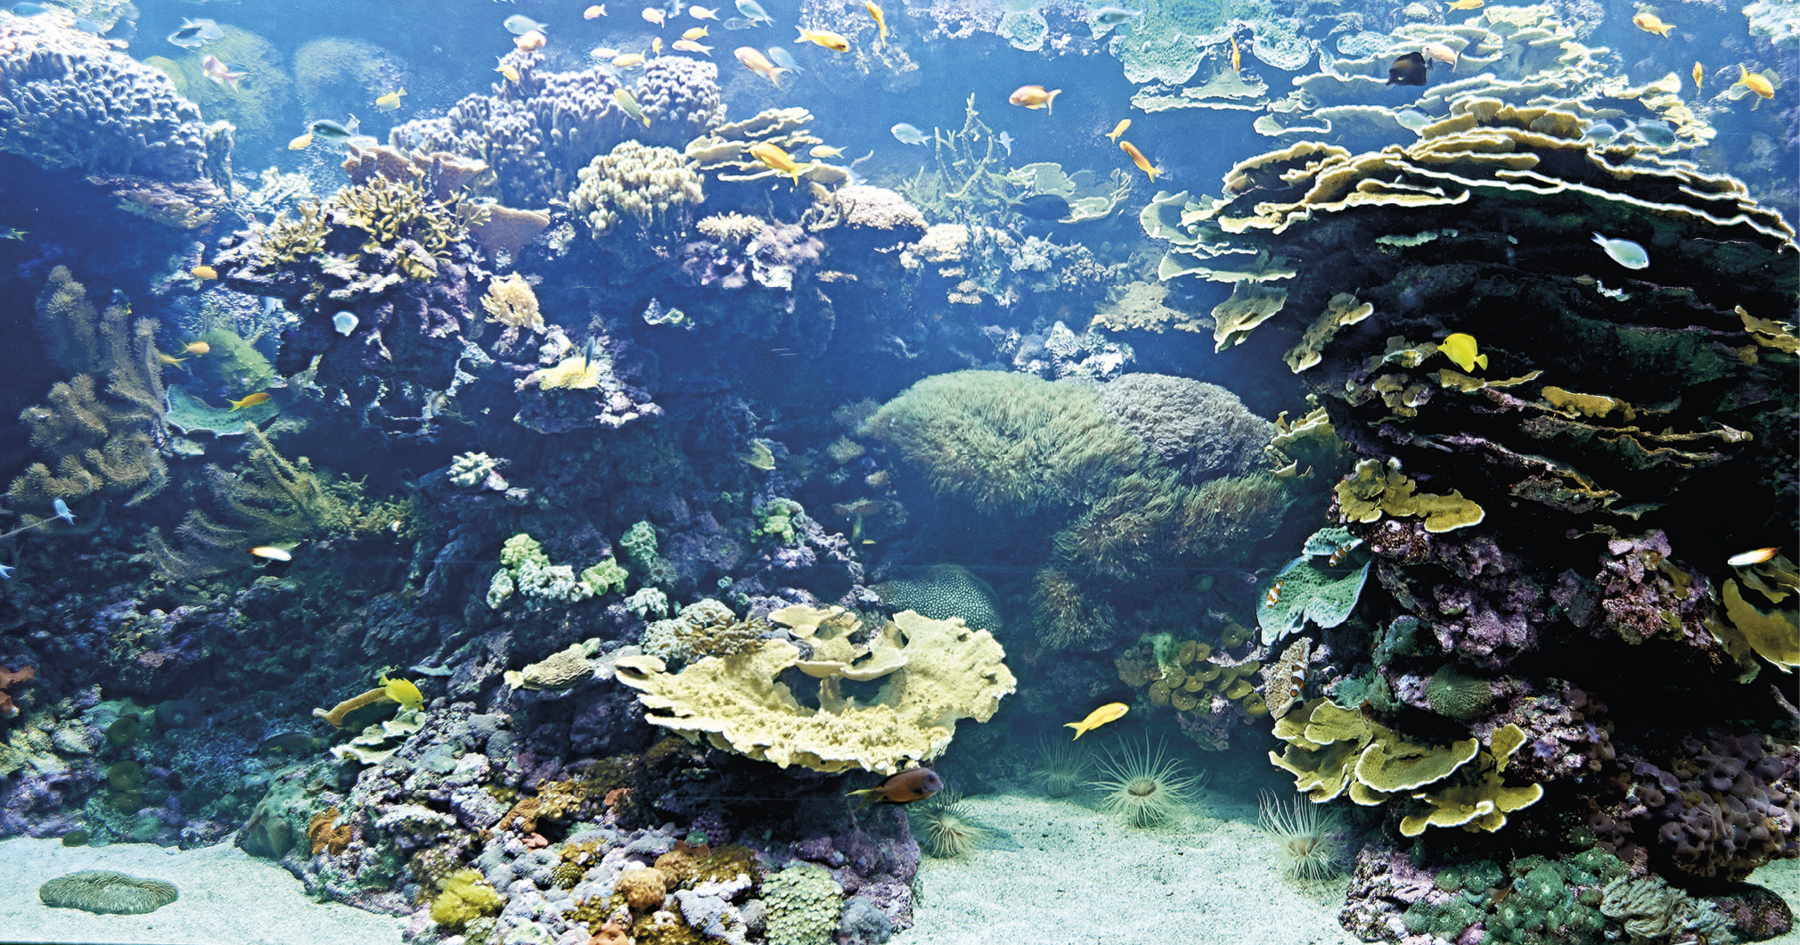 Fotografia. A imagem foi capturada no fundo do mar e apresenta um recife de corais. No canto direito encontra-se uma formação com corais finos nas cores verde, azul e roxo. Próximo a essa formação, há algumas anêmonas que estão sobre a areia. Ao lado esquerdo, há outros corais nas cores amarelo, verde, azul, cinza, laranja e violeta. Ao redor desses corais, há diversos peixes pequenos, predominantemente das cores amarelo e azul.